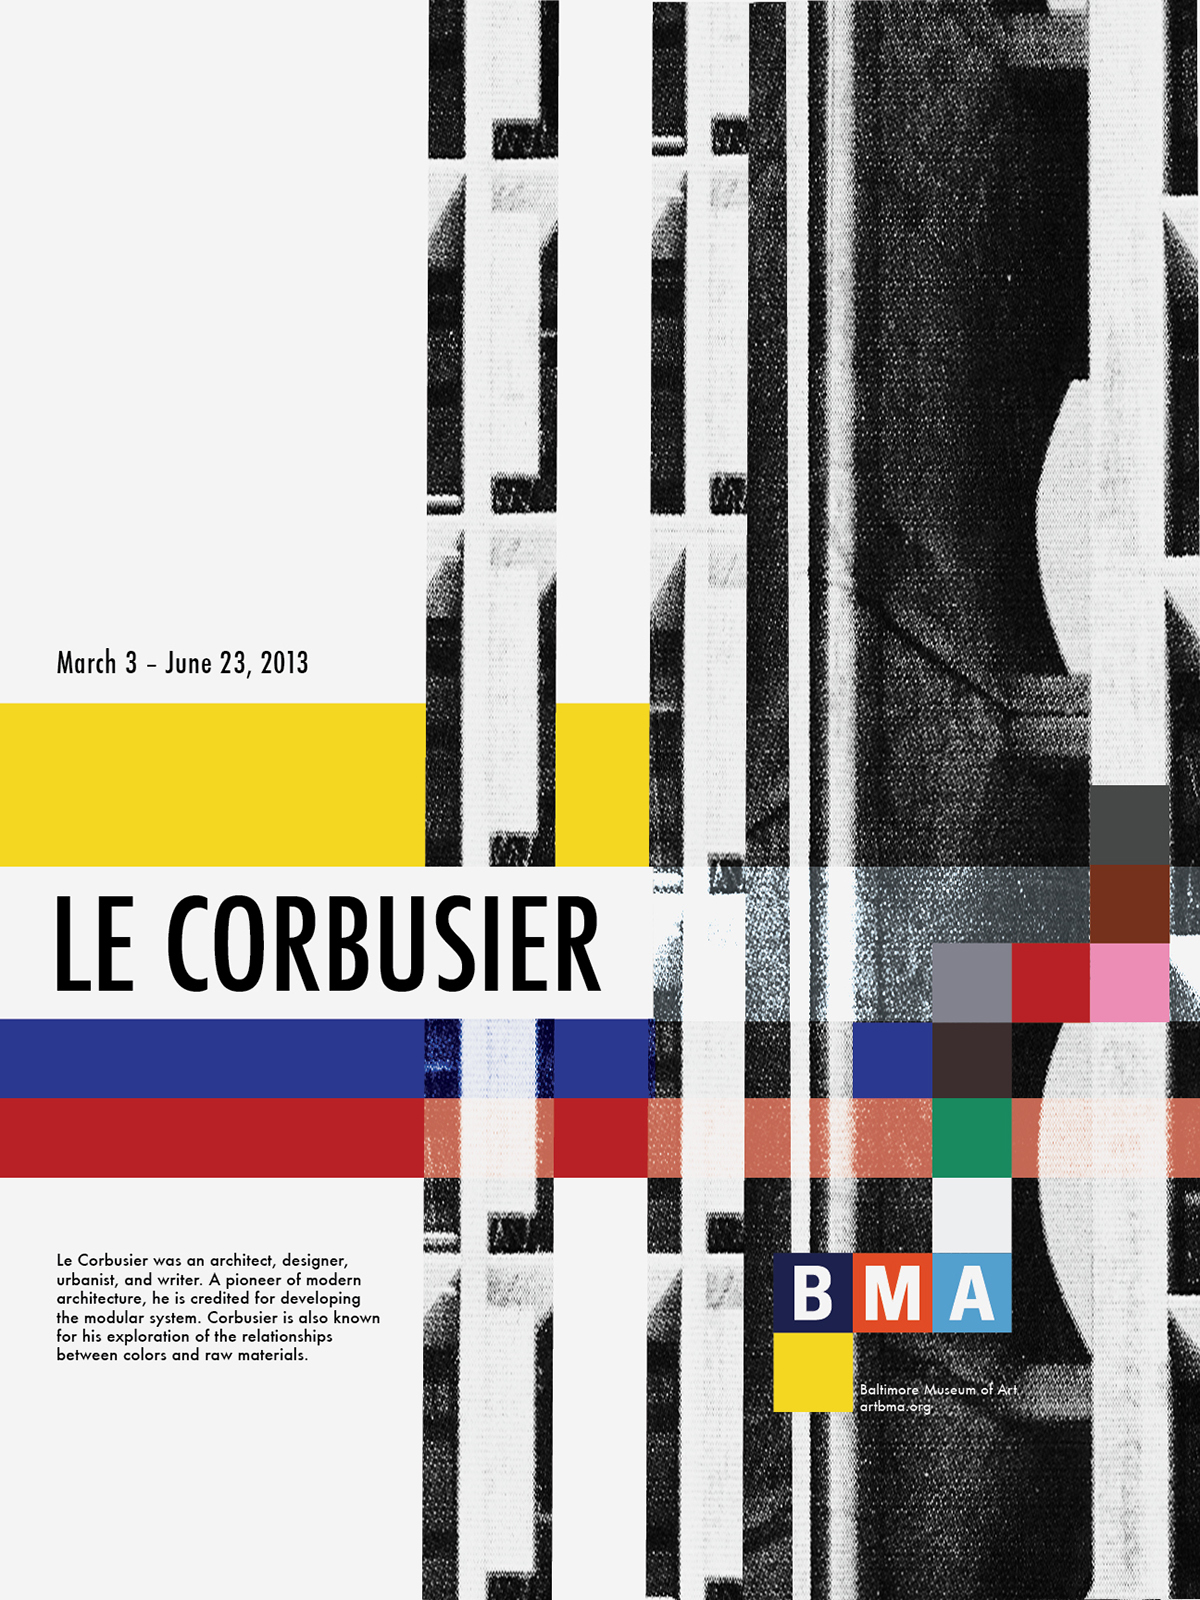 poster Le Corbusier modern modern architecture architect BMA architect poser design